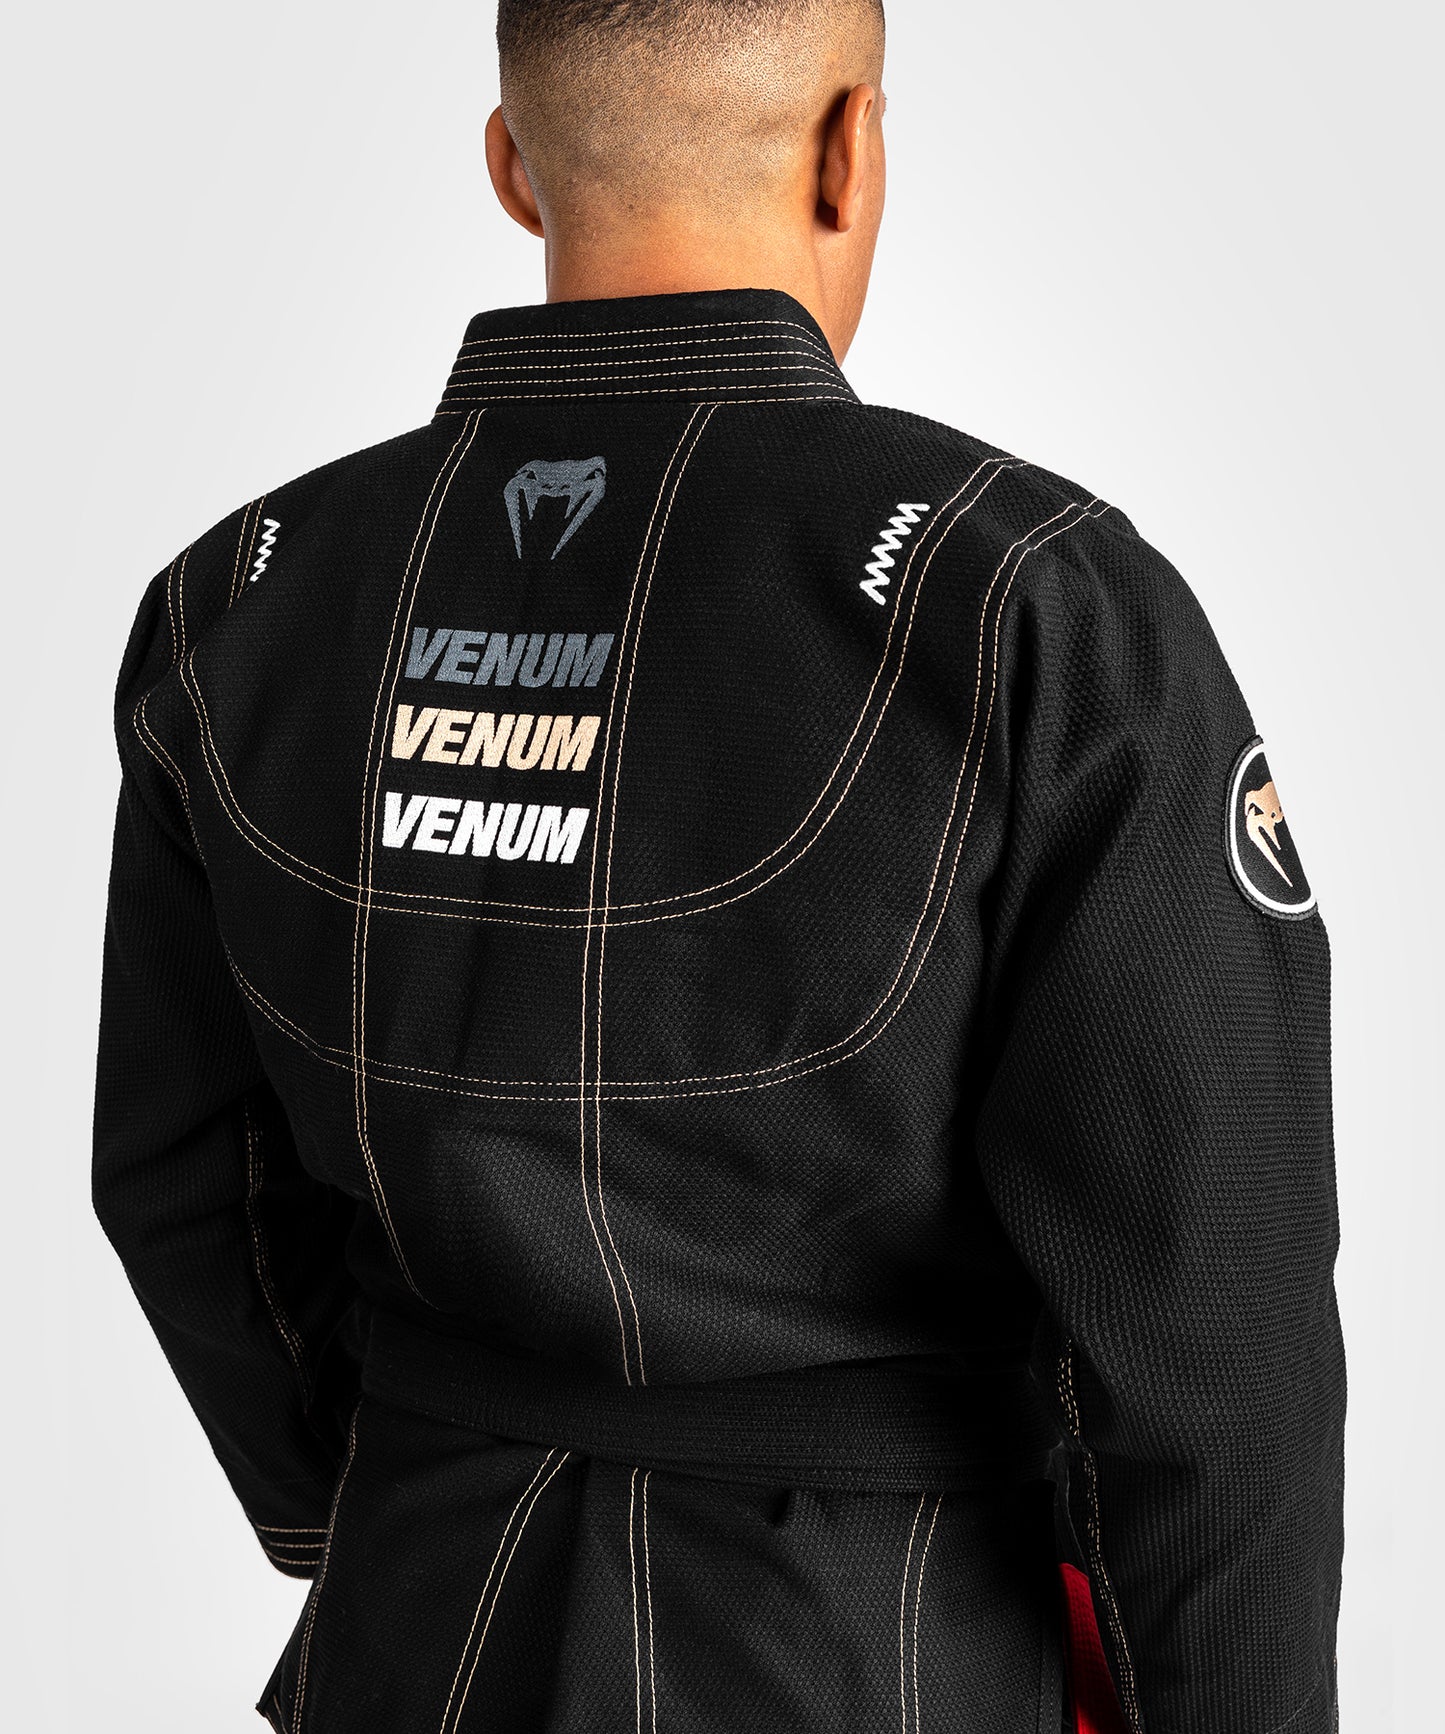 Venum Elite 4.0 Brazilian Jiu Jitsu Gi - Negro